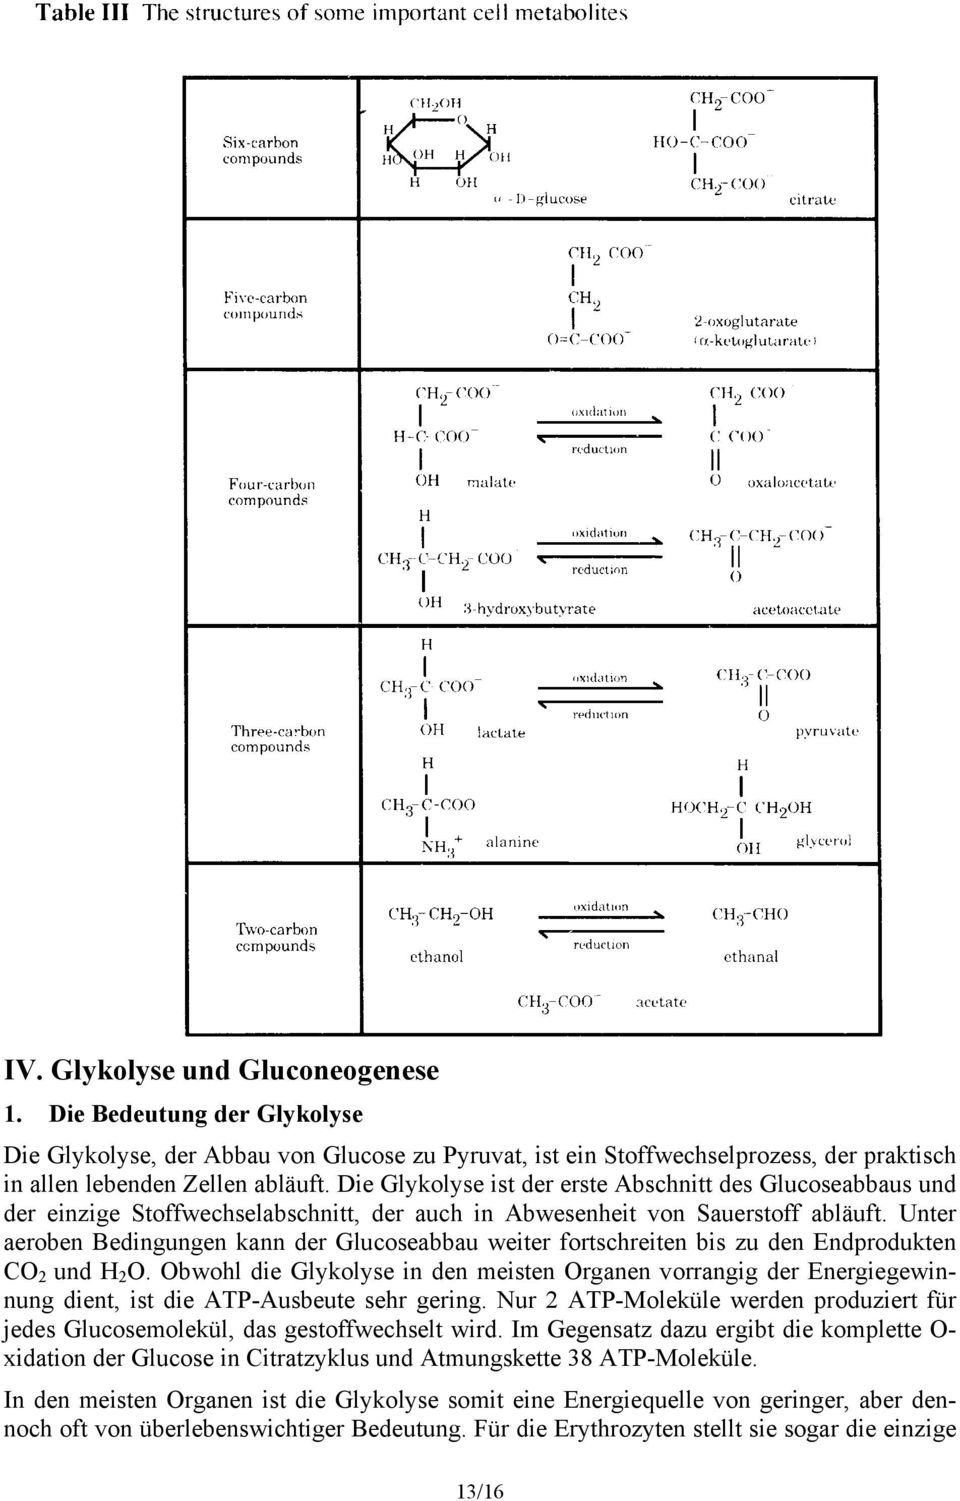 Unter aeroben Bedingungen kann der Glucoseabbau weiter fortschreiten bis zu den Endprodukten CO 2 und H 2 O.